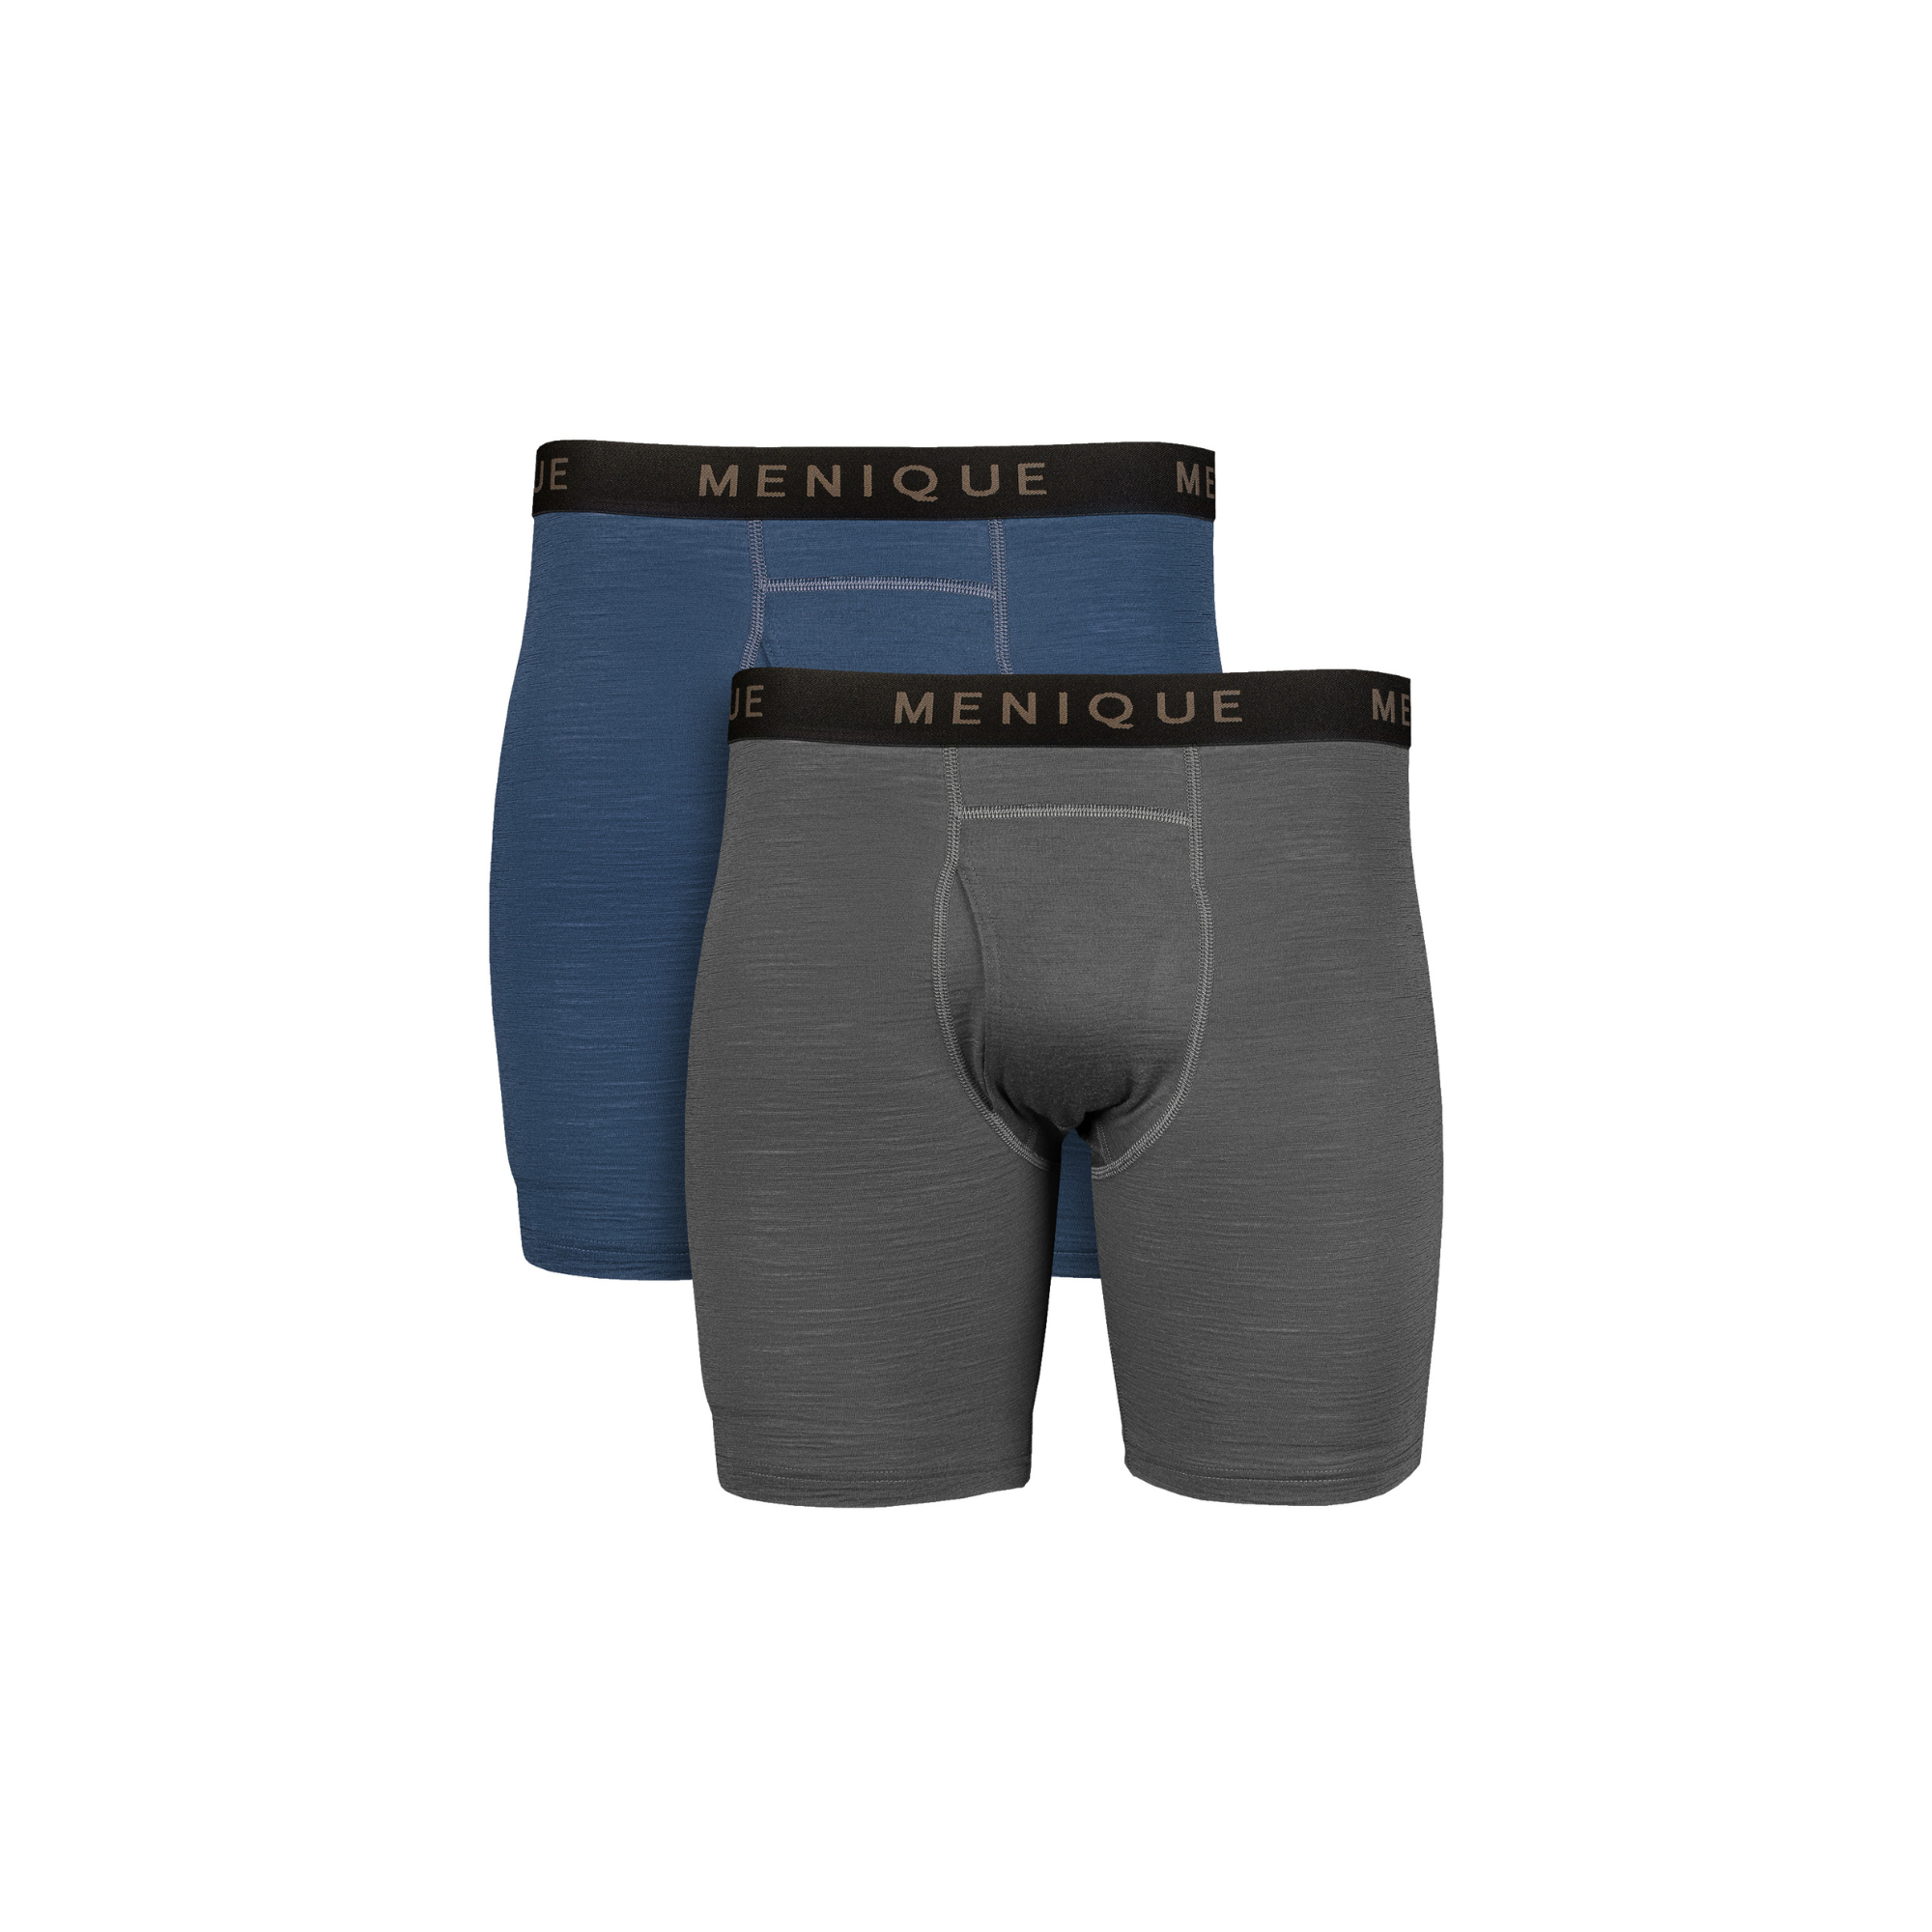 METARINO Merino Wool Mens Underwear Boxer Briefs Soft Comfy Breathable  Moisture